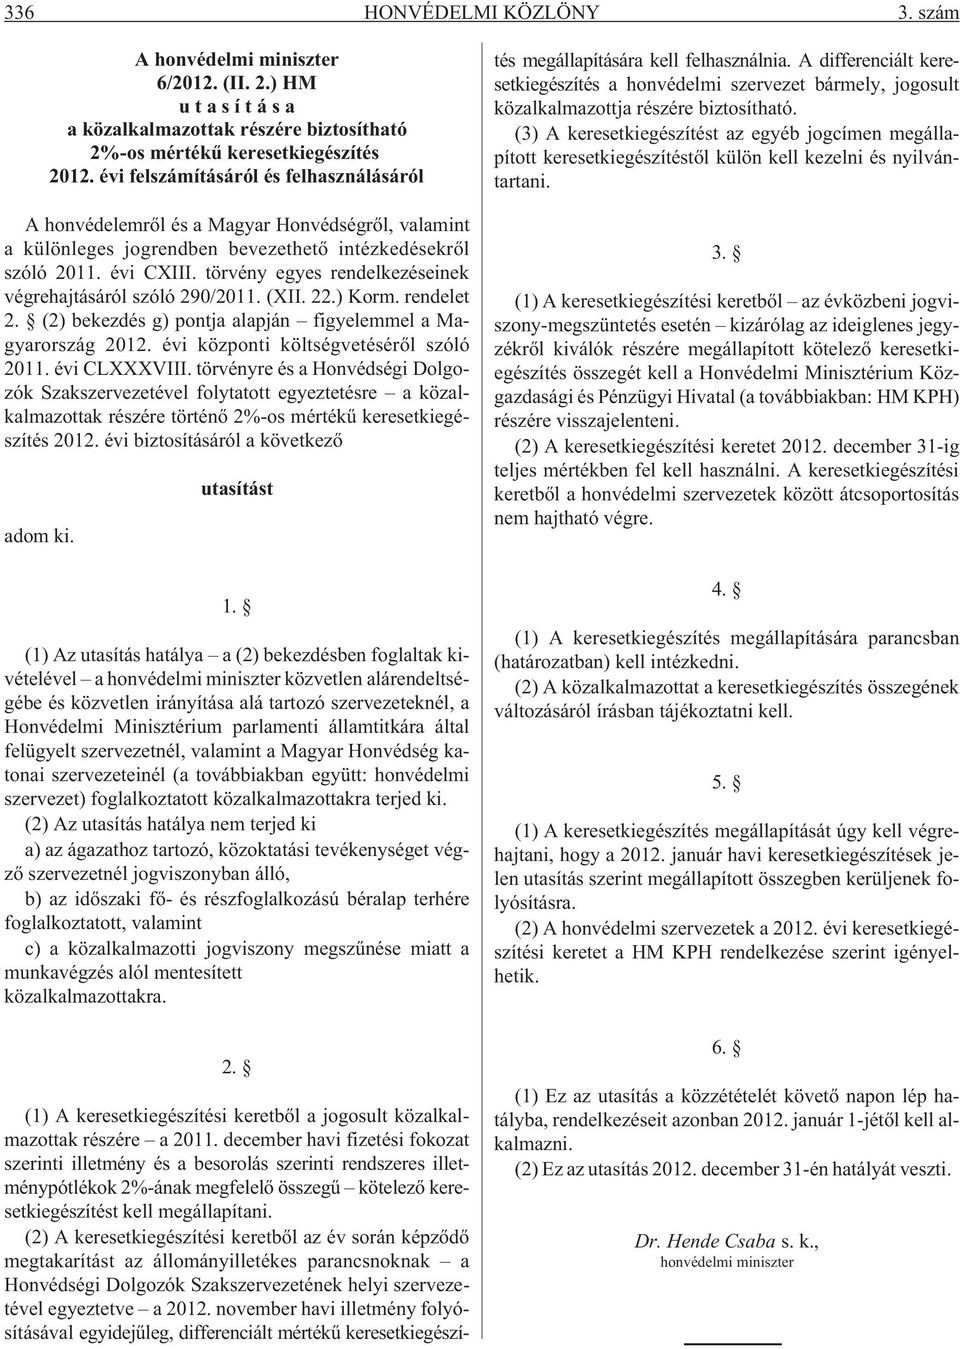 törvény egyes rendelkezéseinek végrehajtásáról szóló 290/2011. (XII. 22.) Korm. rendelet 2. (2) bekezdés g) pontja alapján figyelemmel a Magyarország 2012. évi központi költségvetésérõl szóló 2011.